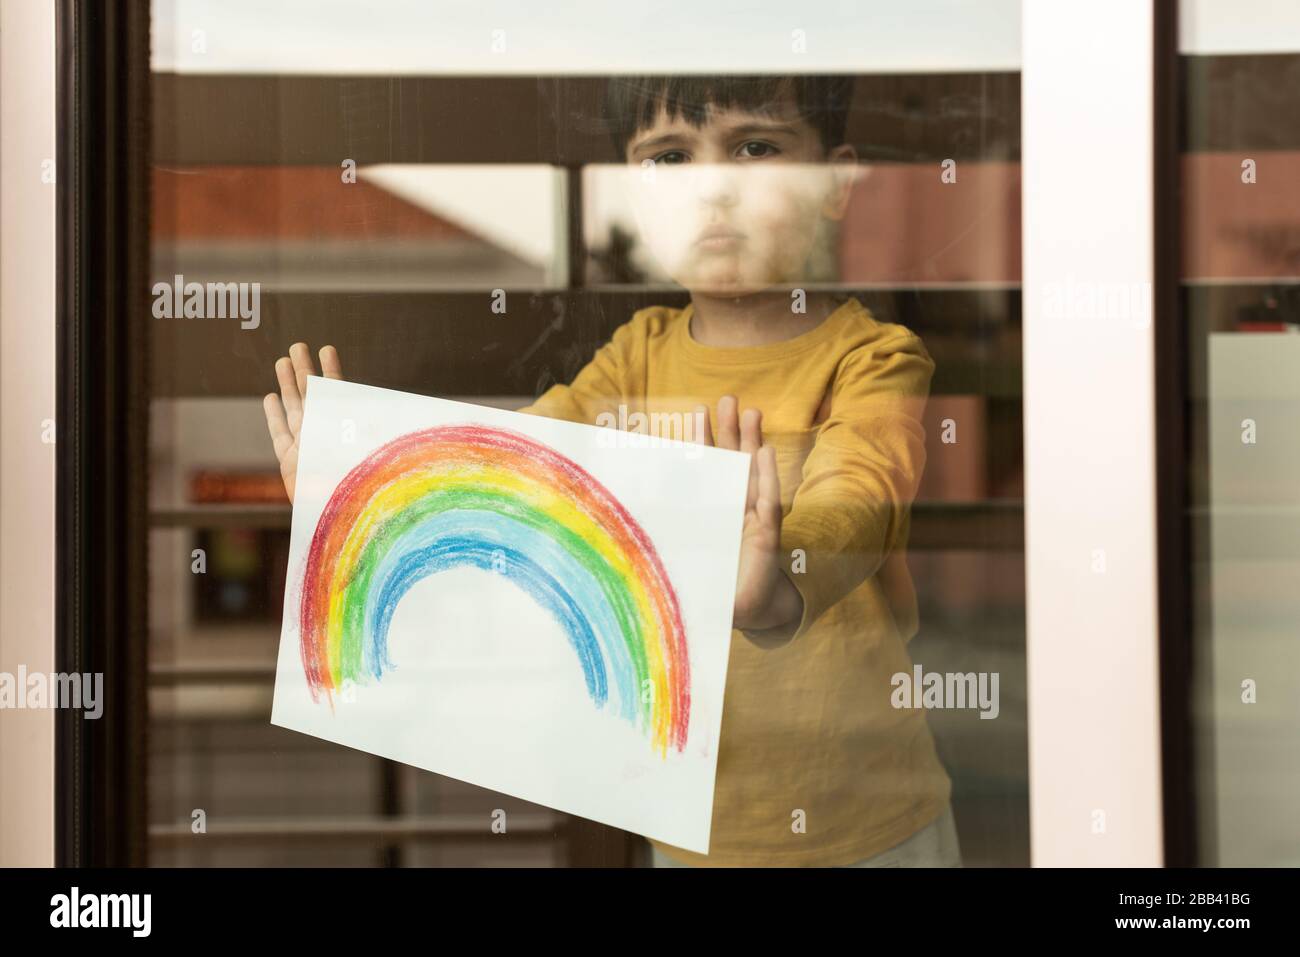 Inspirierendes kleines Kind, das eine Zeichnung eines Regenbogens durch das Fenster hält Stockfoto